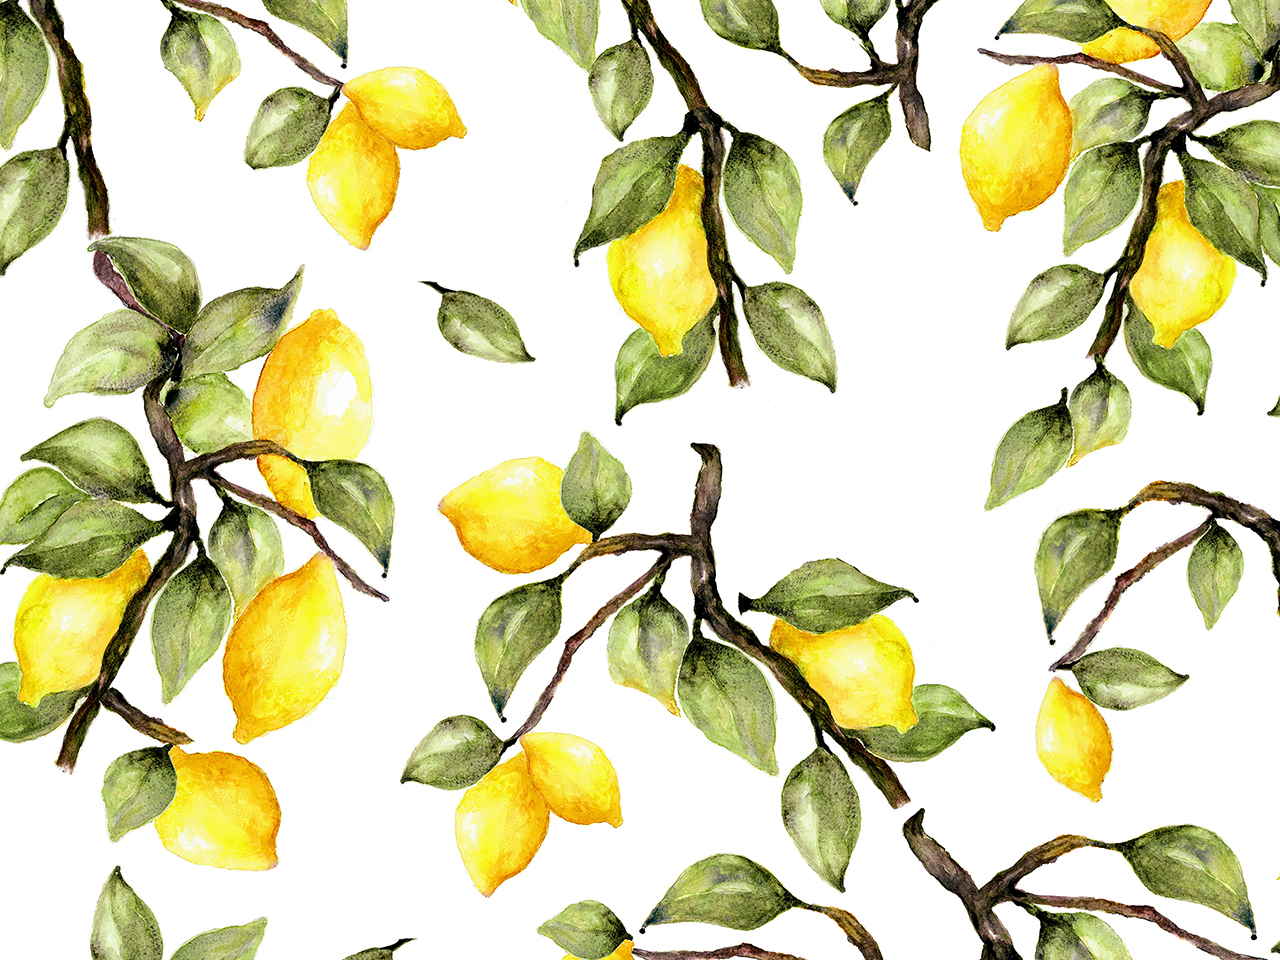 The gardener - Lemons